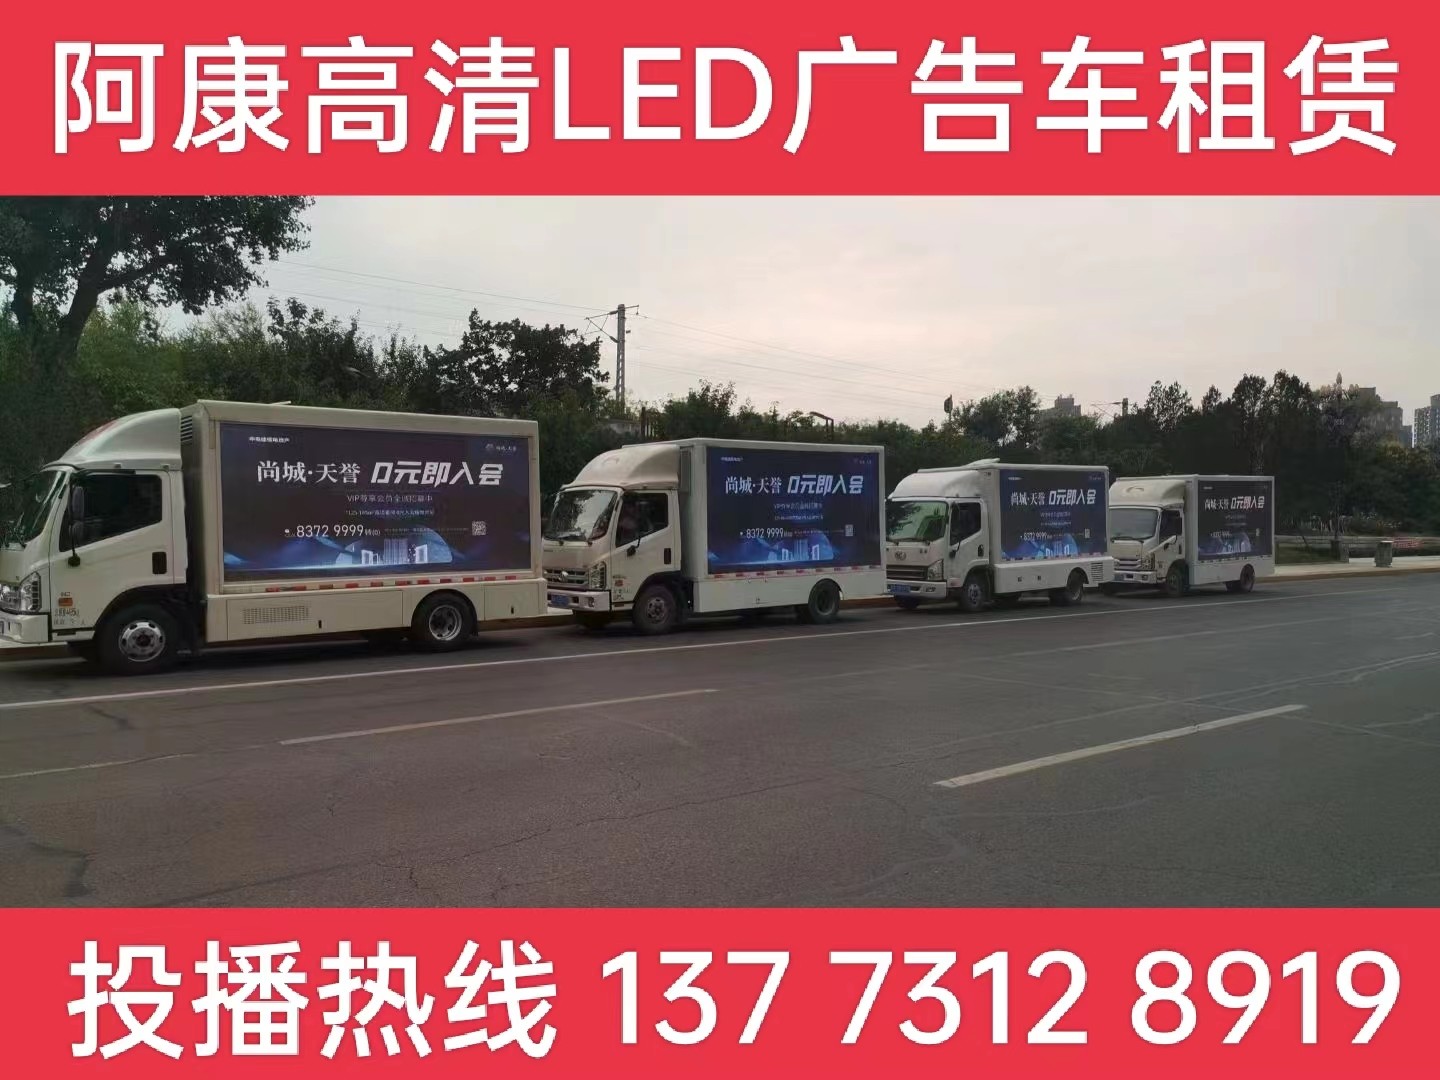 吴江LED广告车出租-某房产公司效果展示